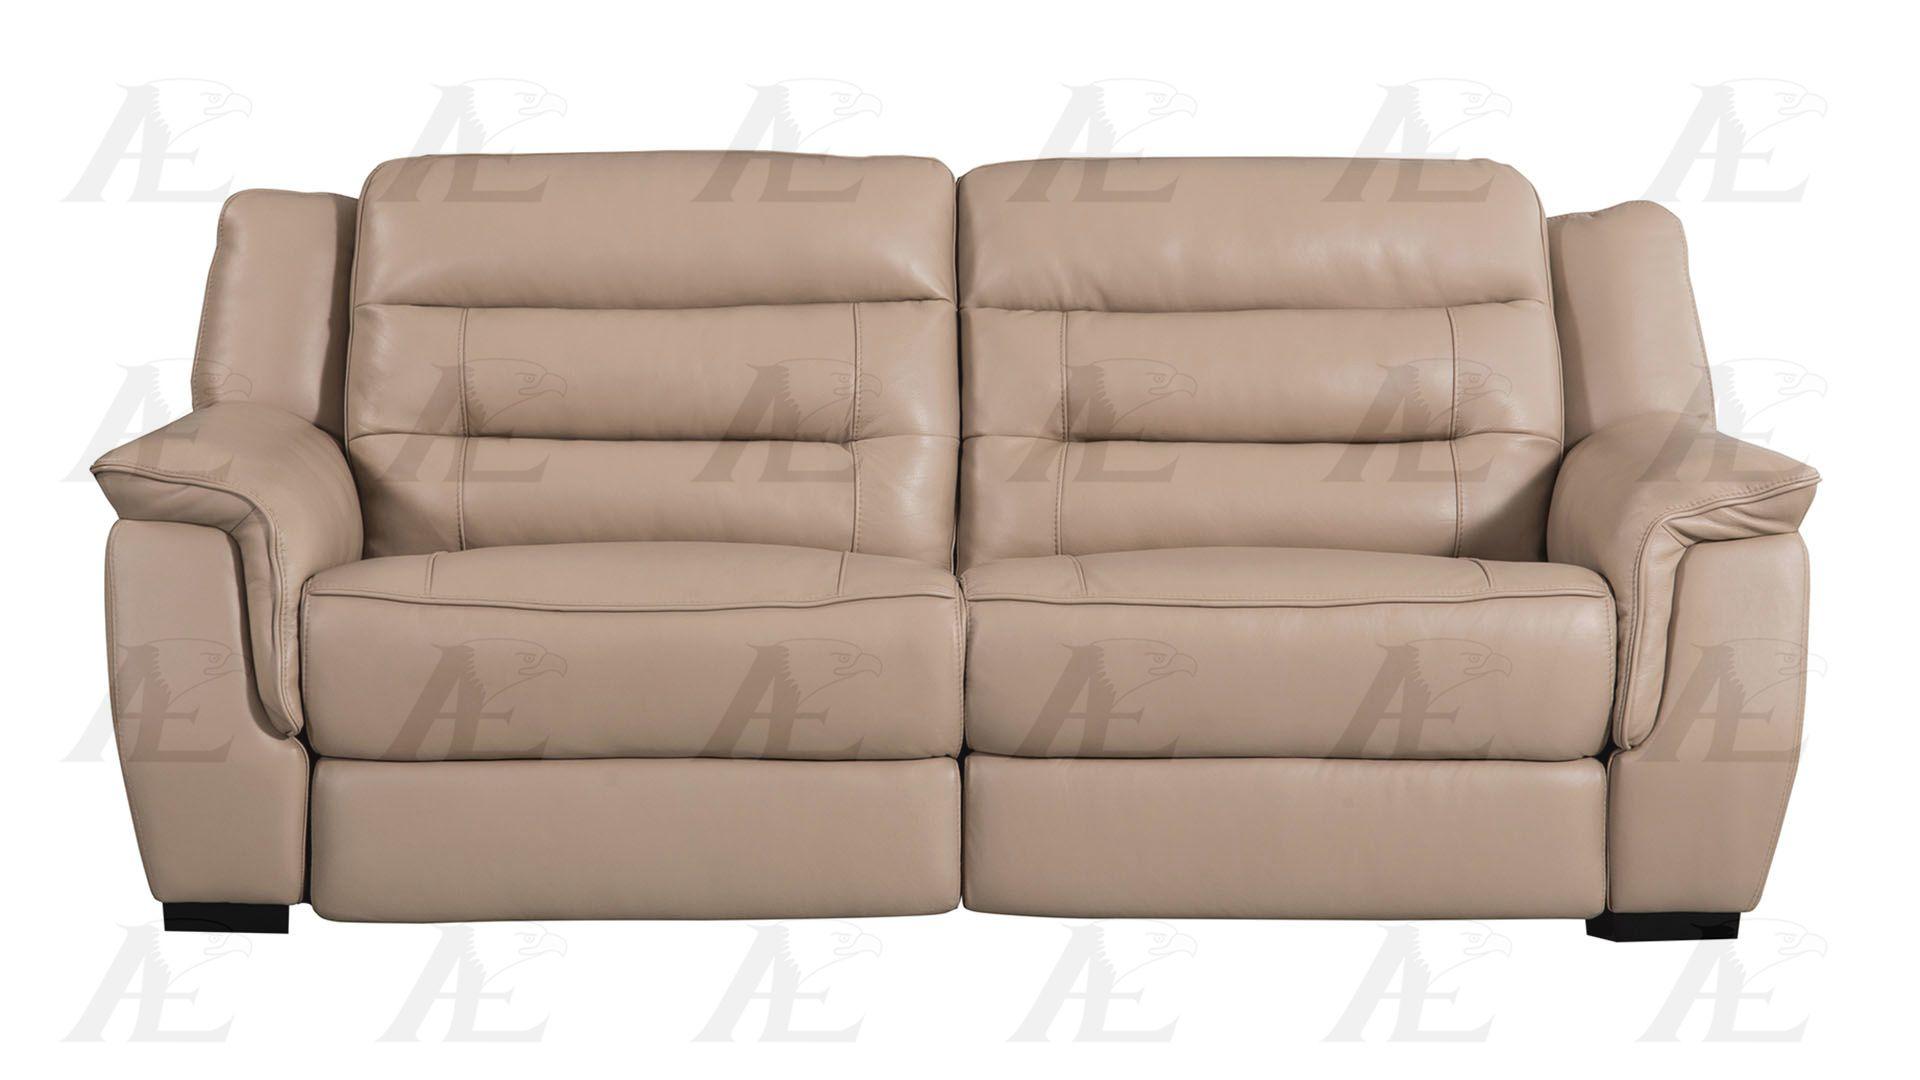 

    
American Eagle Furniture EK089-TAN Reclining Sofa Tan EK089-TAN-SF
